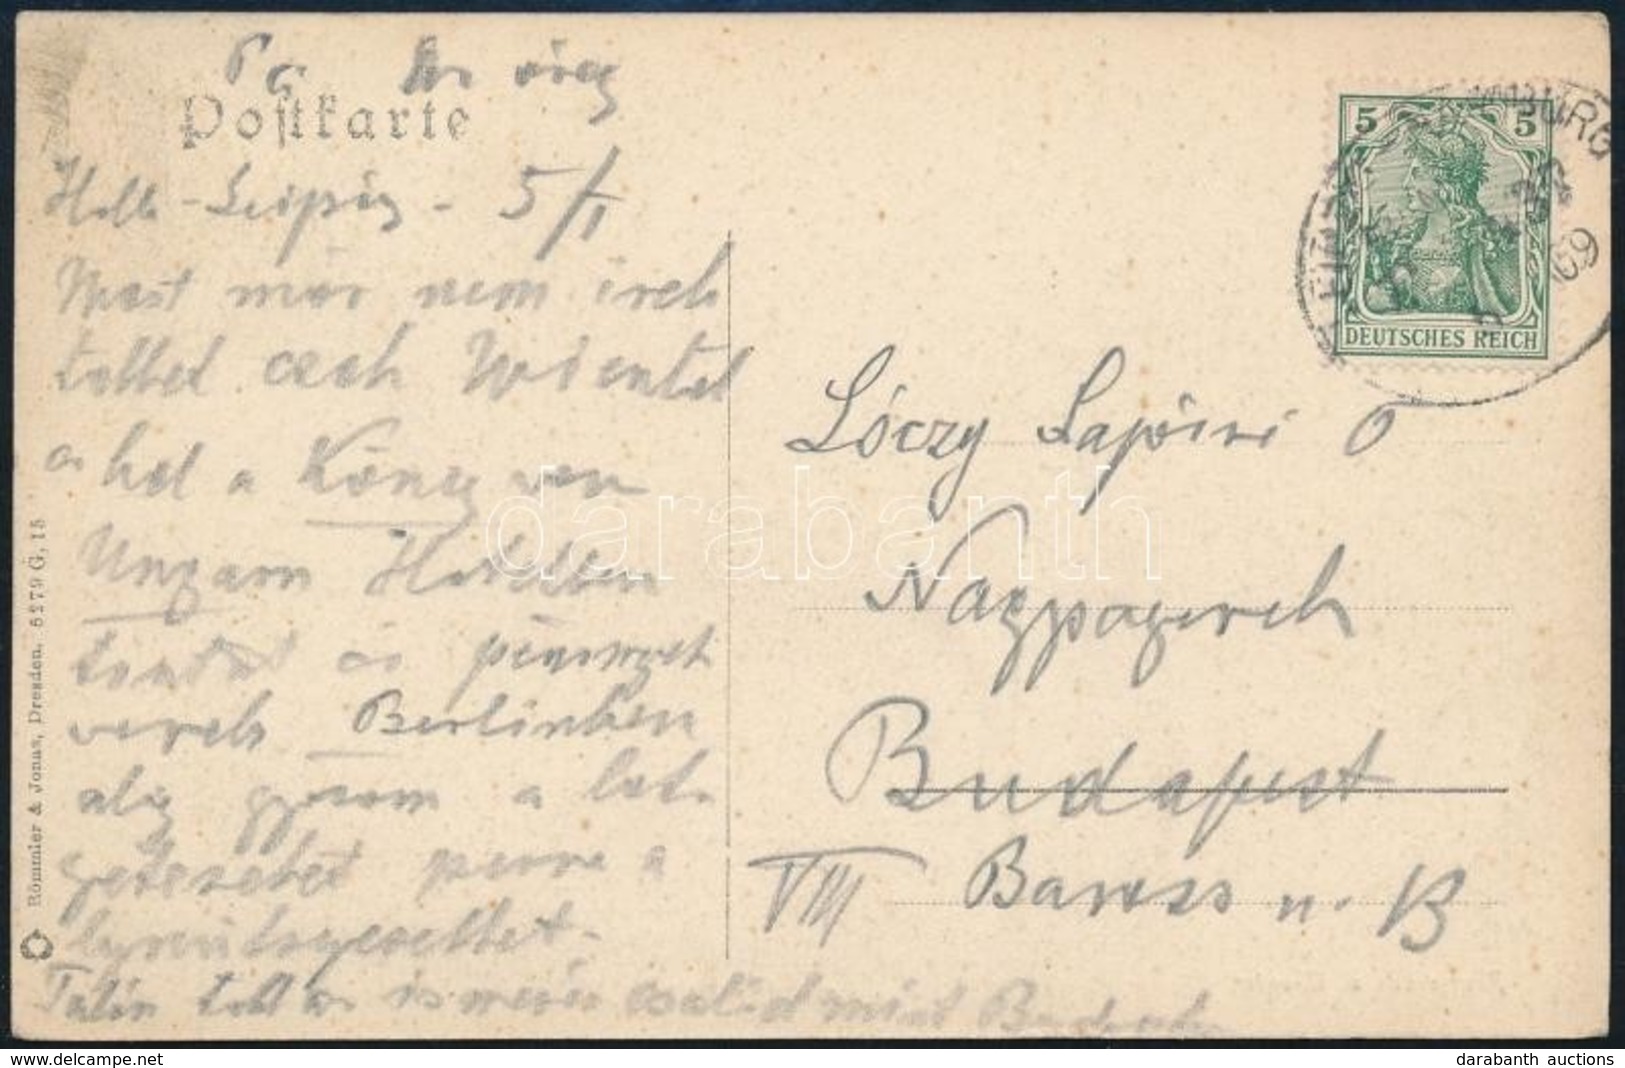 1910 Lóczy Lajos (geológus, 1849-1920) Saját Kézzel írt Levelezőlapja Feleségének Halleből - Sin Clasificación